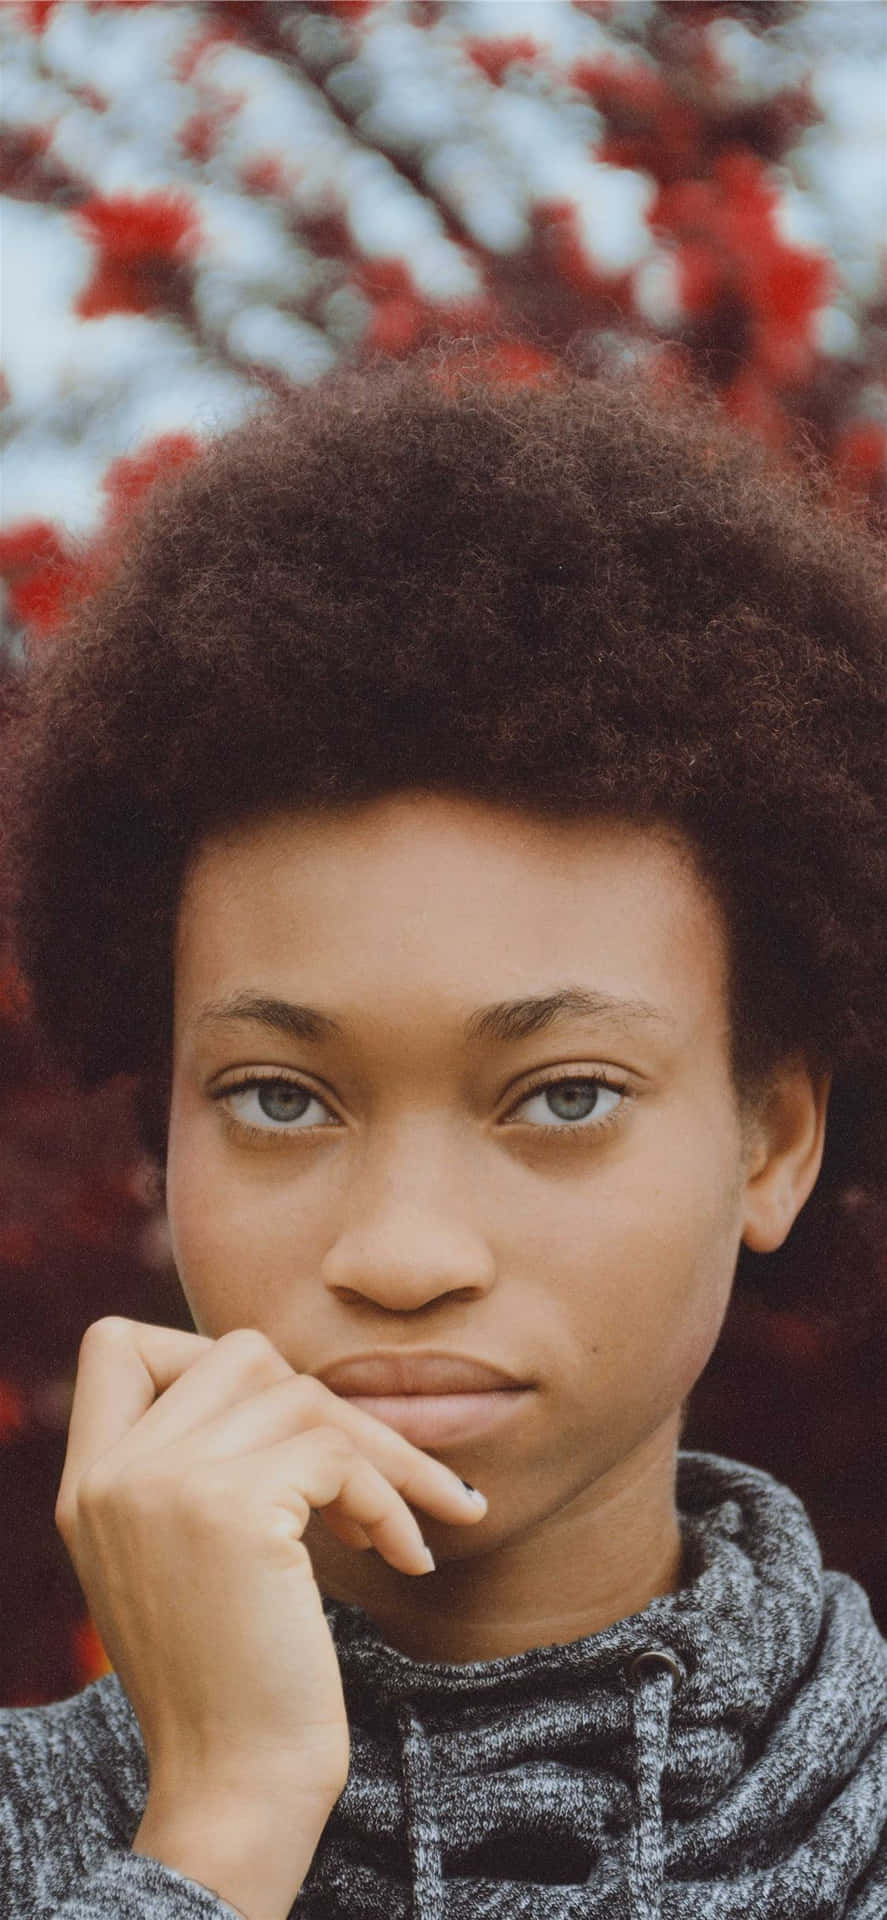 Nigerian Woman Portrait Wallpaper